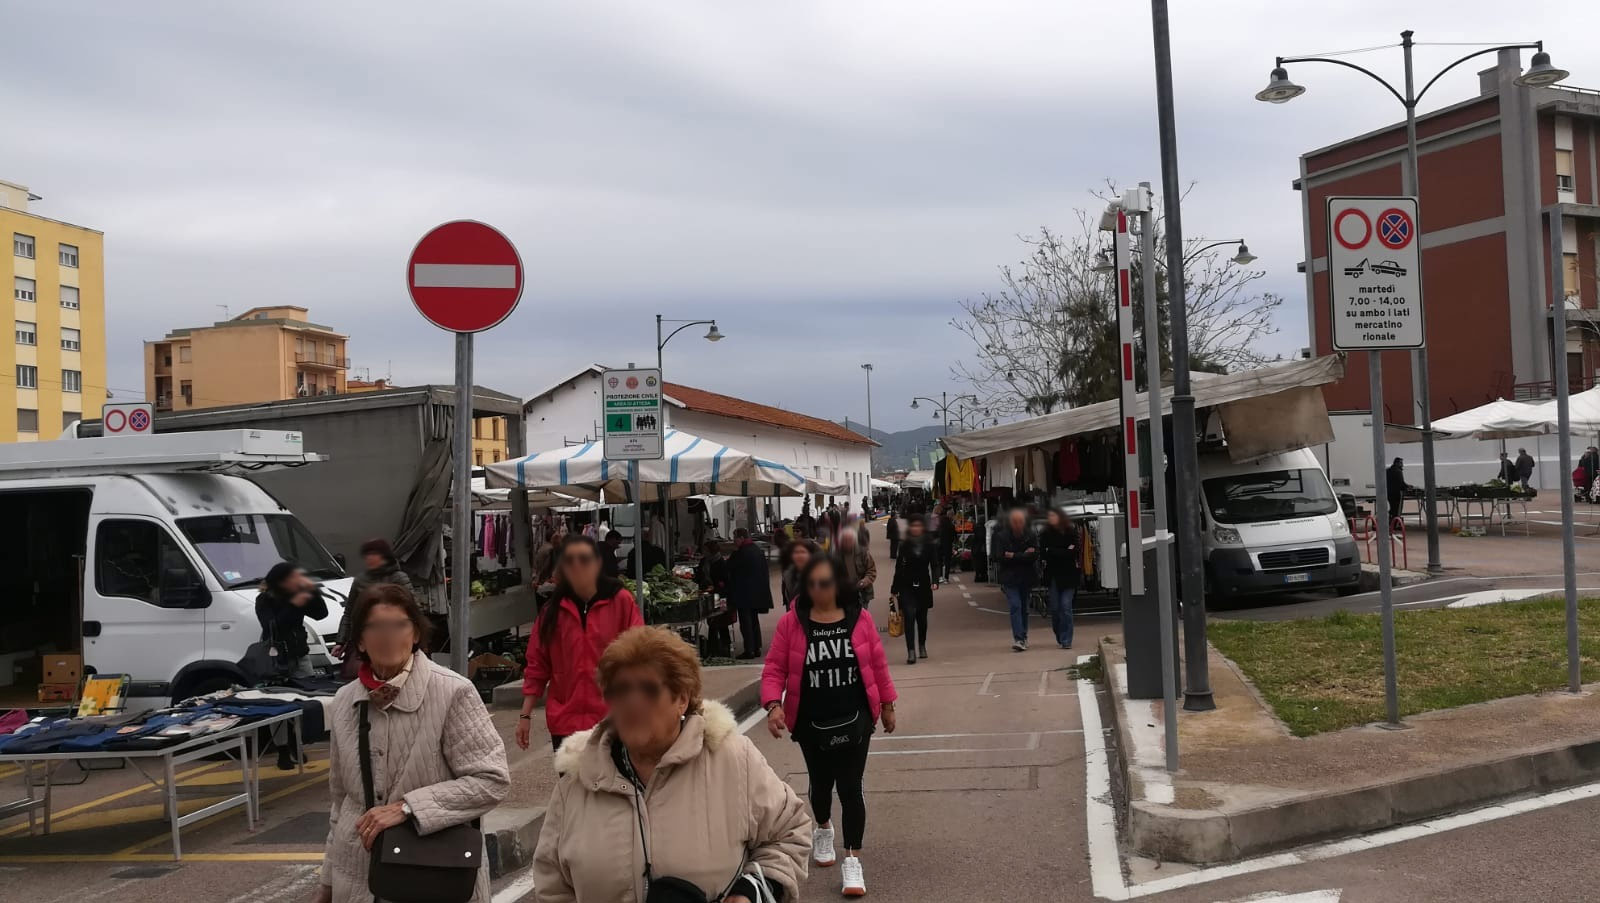 mercato-porto-romano-olbia-stazione2